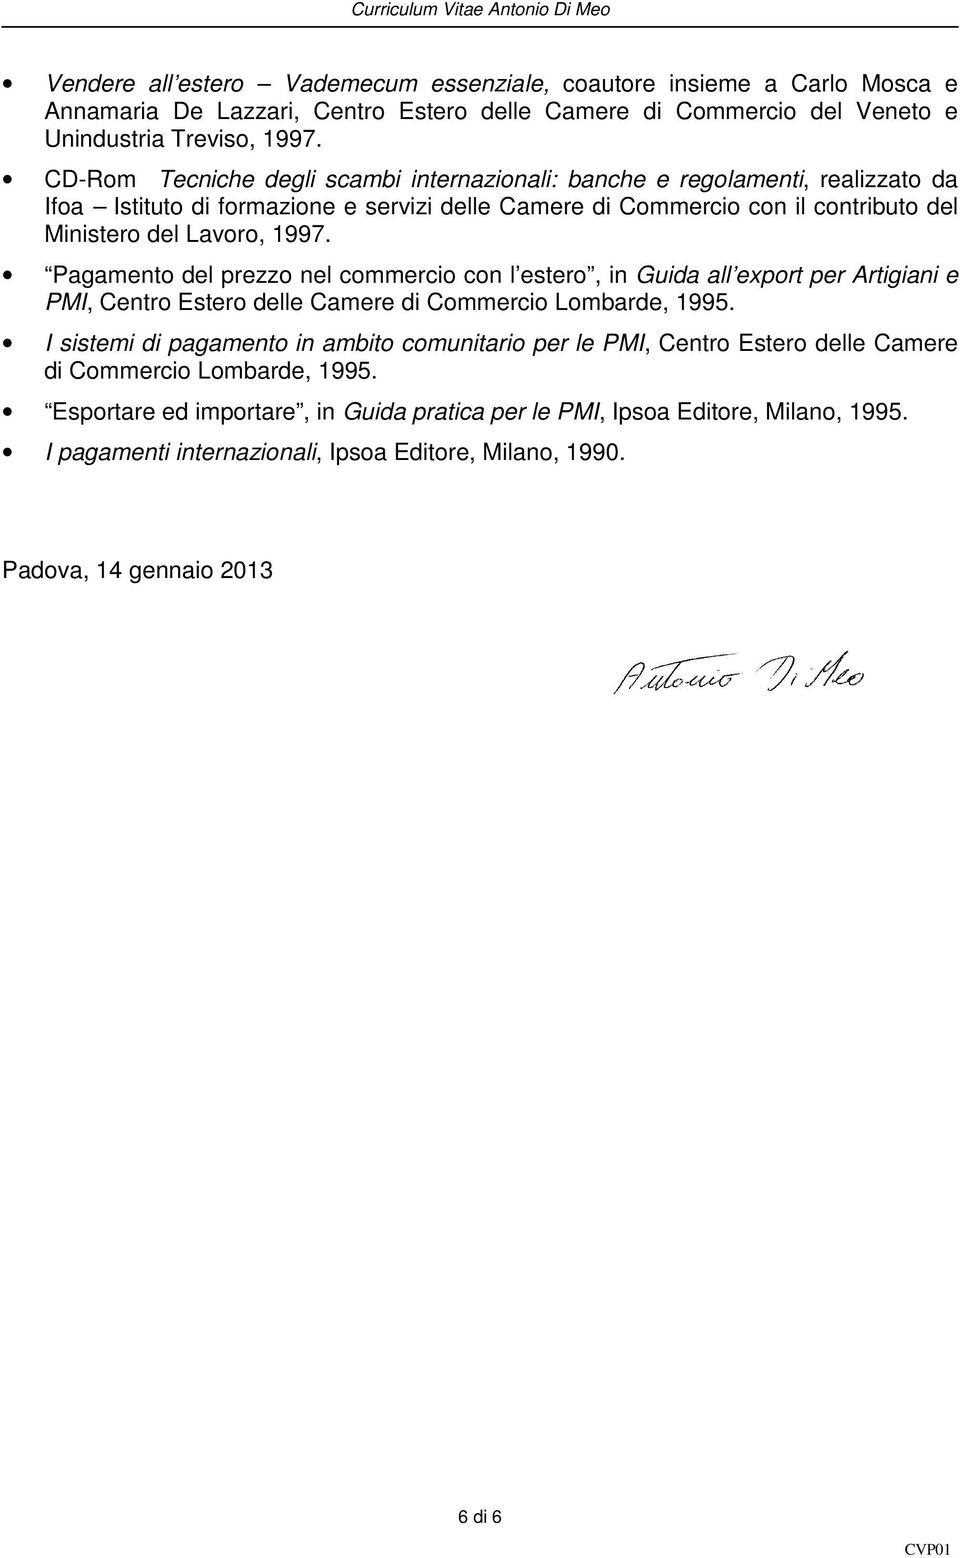 Pagamento del prezzo nel commercio con l estero, in Guida all export per Artigiani e PMI, Centro Estero delle Camere di Commercio Lombarde, 1995.